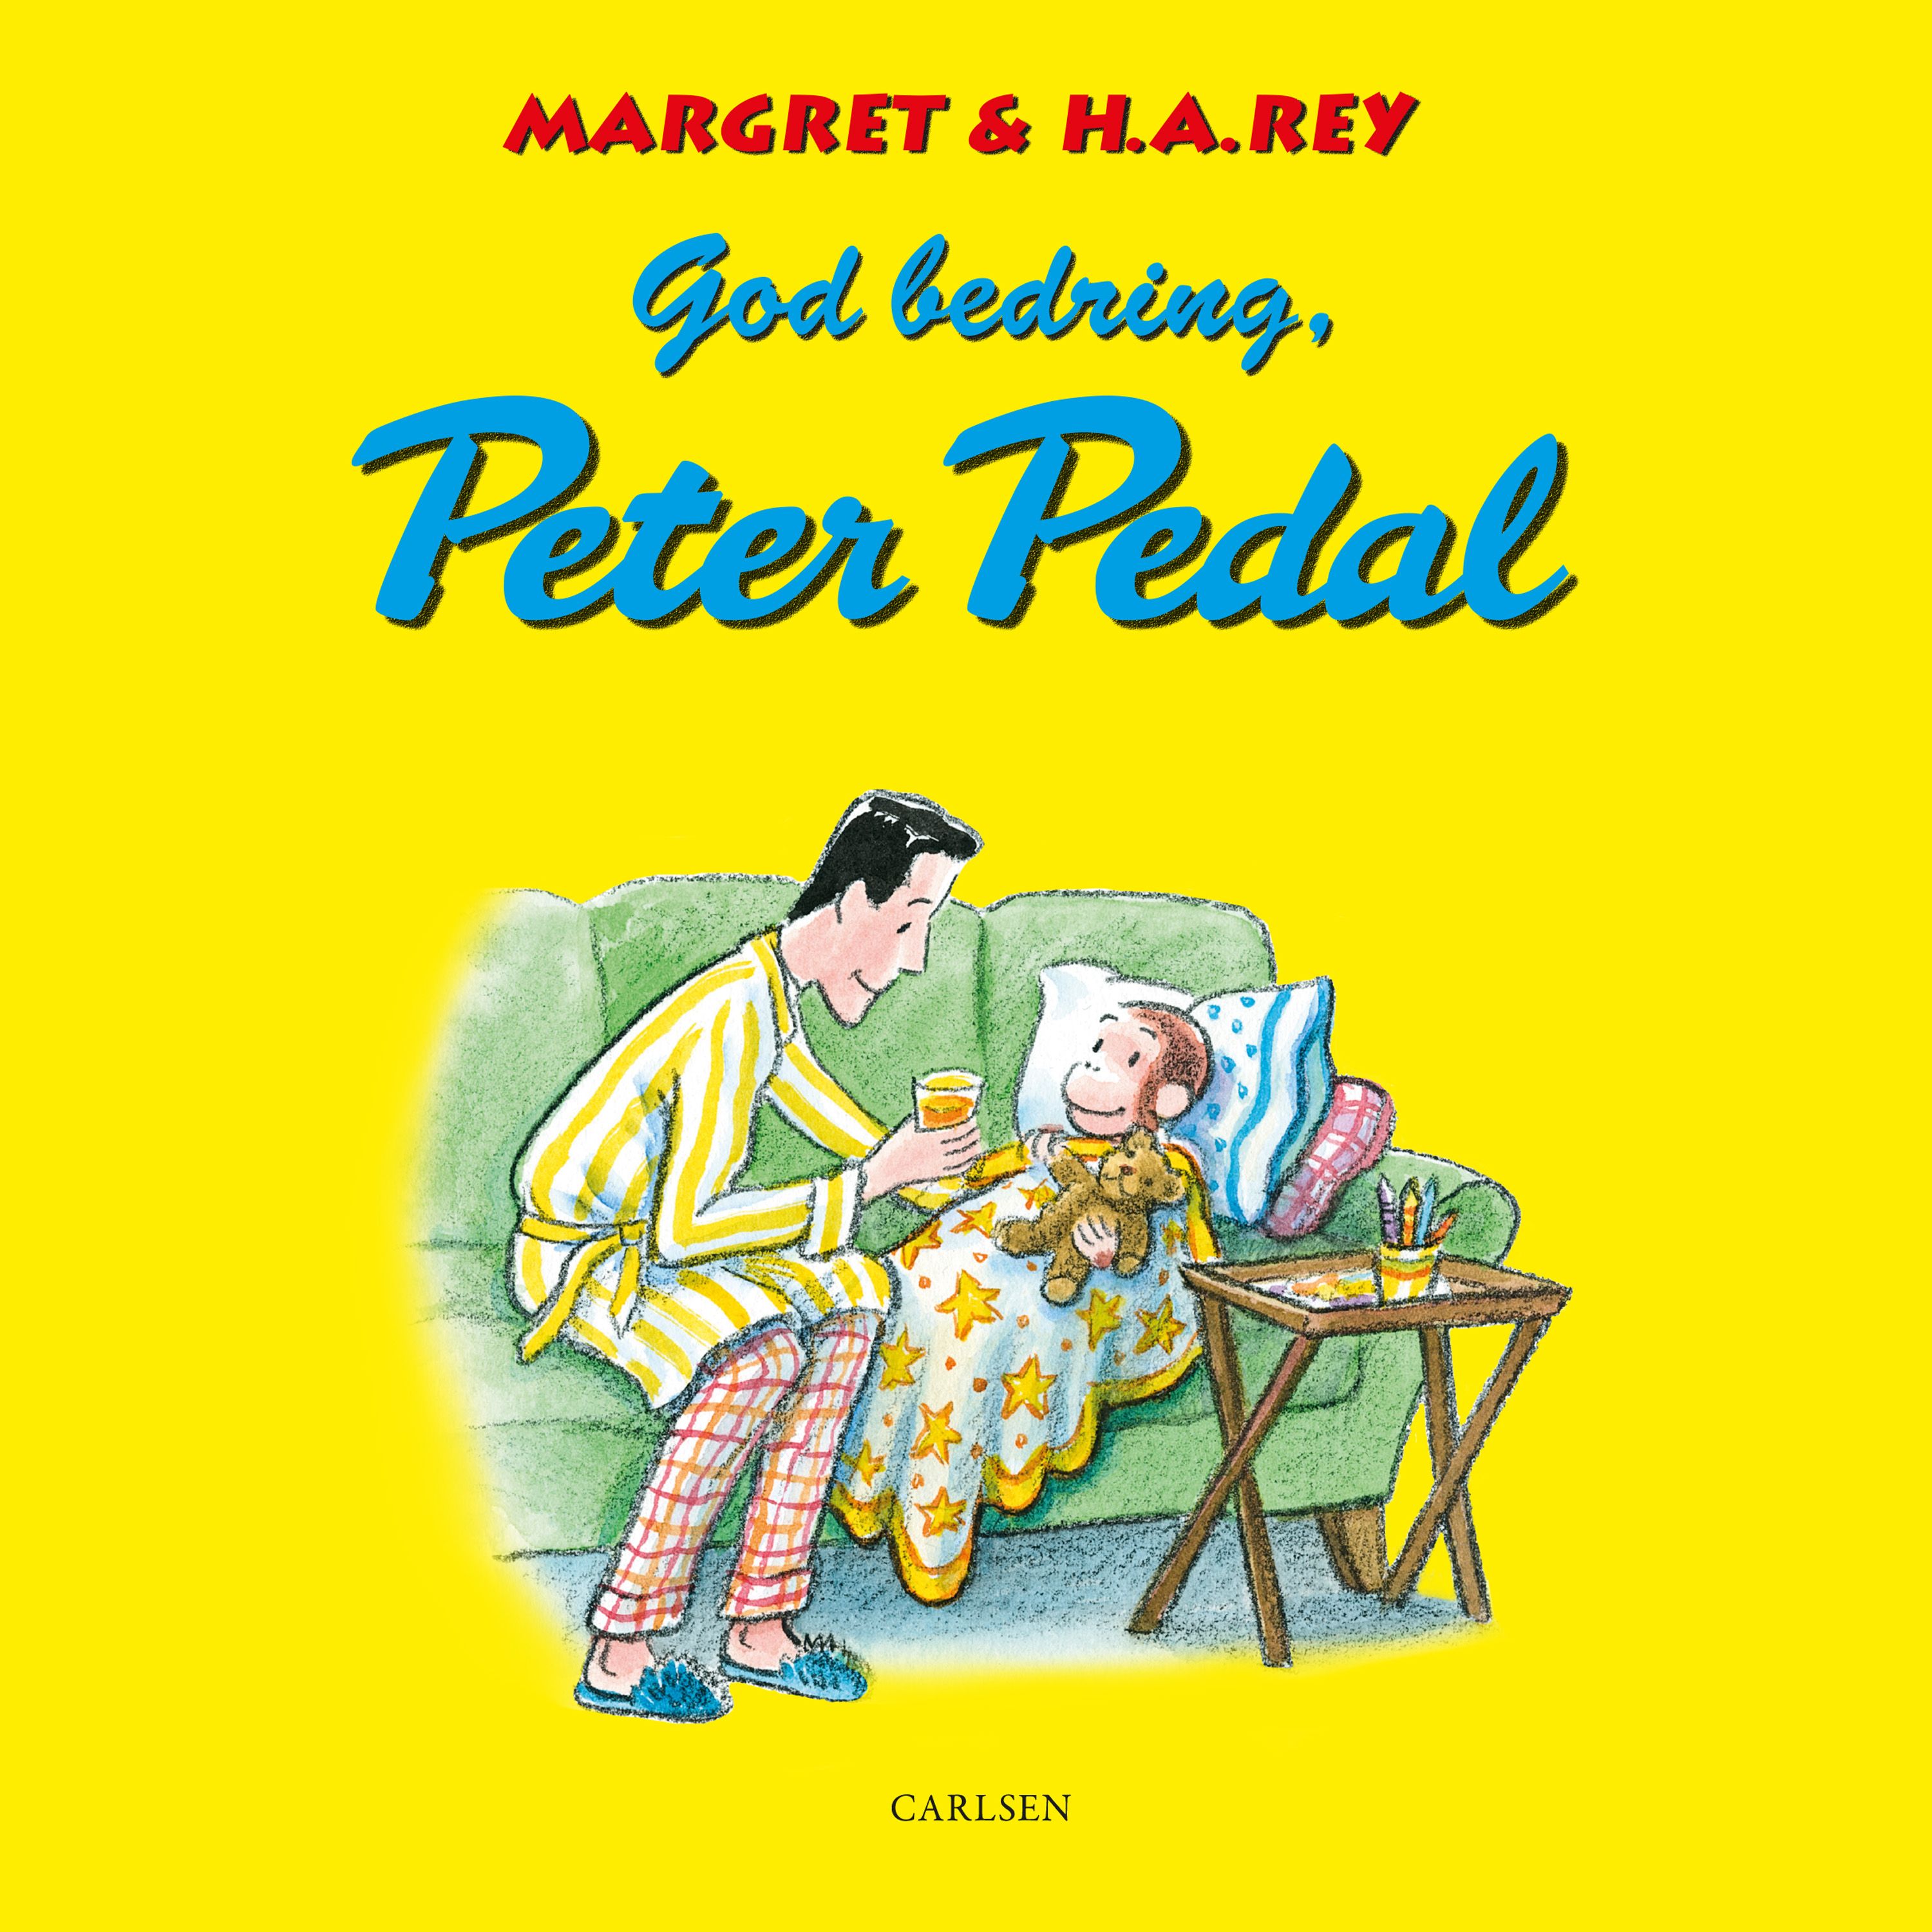 God bedring, Peter Pedal, ljudbok av H. A. Rey